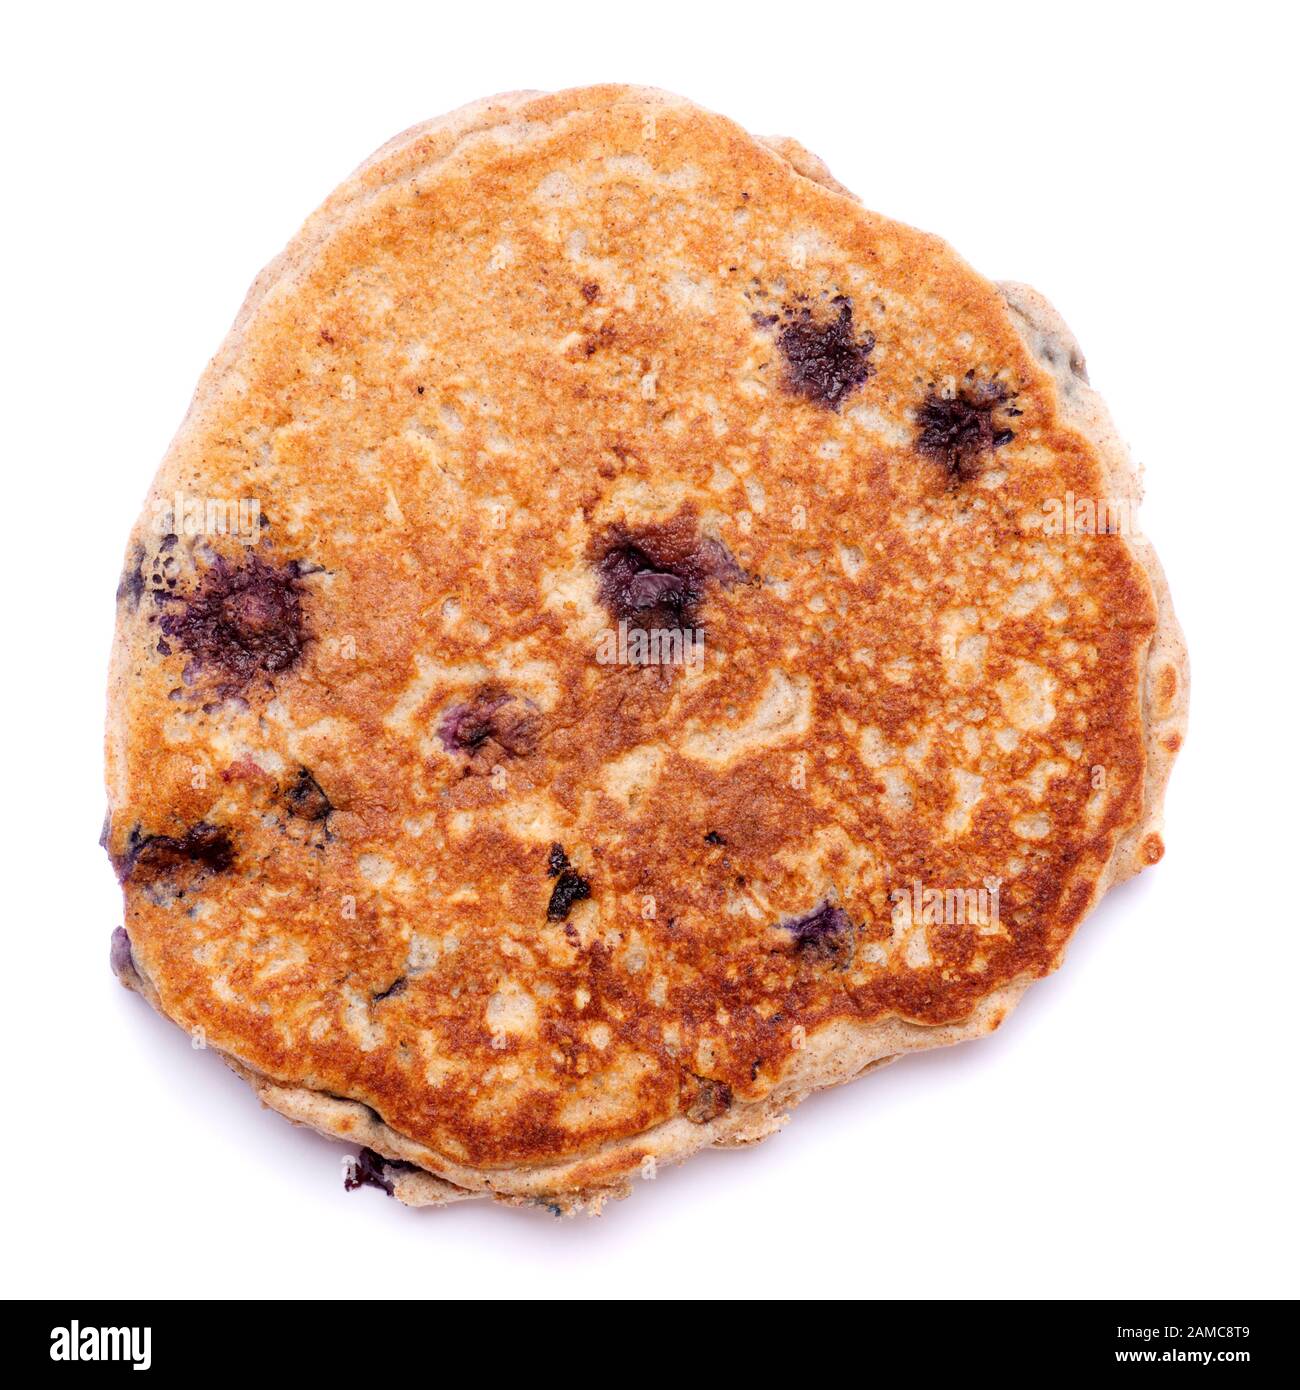 Single blueberry pancake isolated on white background. Stock Photo